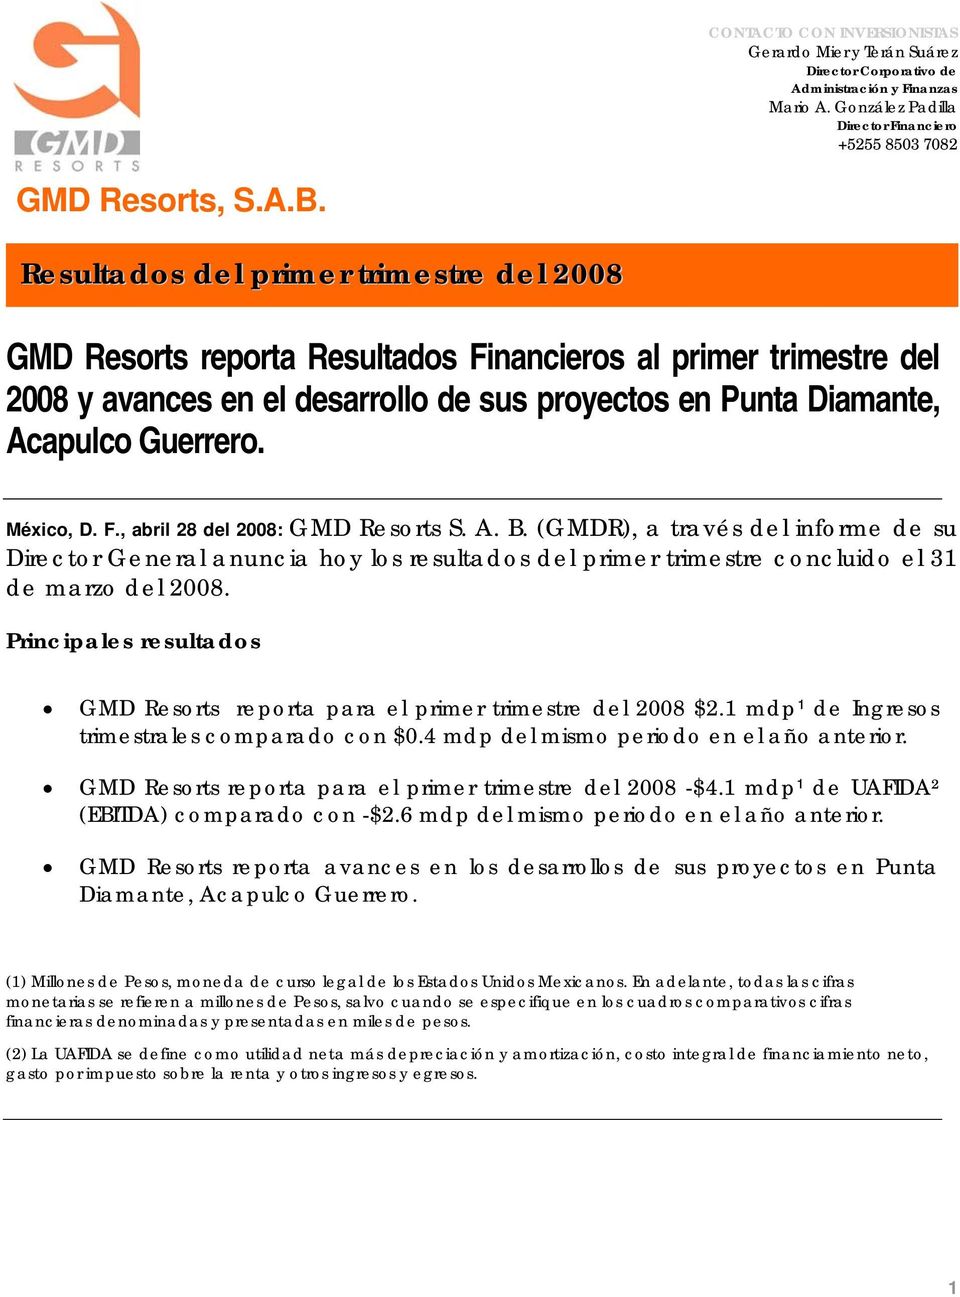 México, D. F., abril 8 del 008: GMD Resorts S. A. B. (GMDR), a través del informe de su Director General anuncia hoy los resultados del primer trimestre concluido el 31 de marzo del 008.